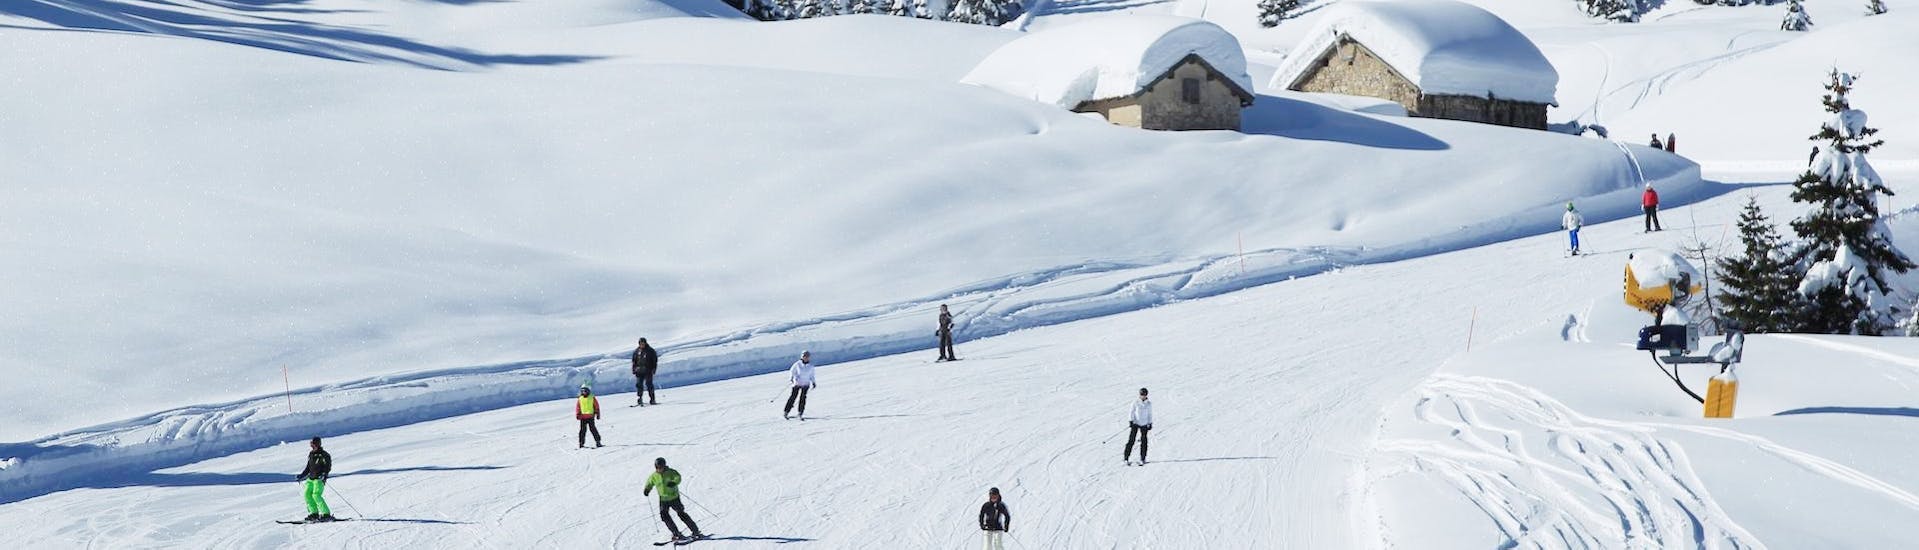 Pistes où se déroulent les Cours particuliers de ski pour Adultes (dès 15 ans) pour Tous Niveaux avec Scuola Italiana Sci Folgaria-Fondo Grande.